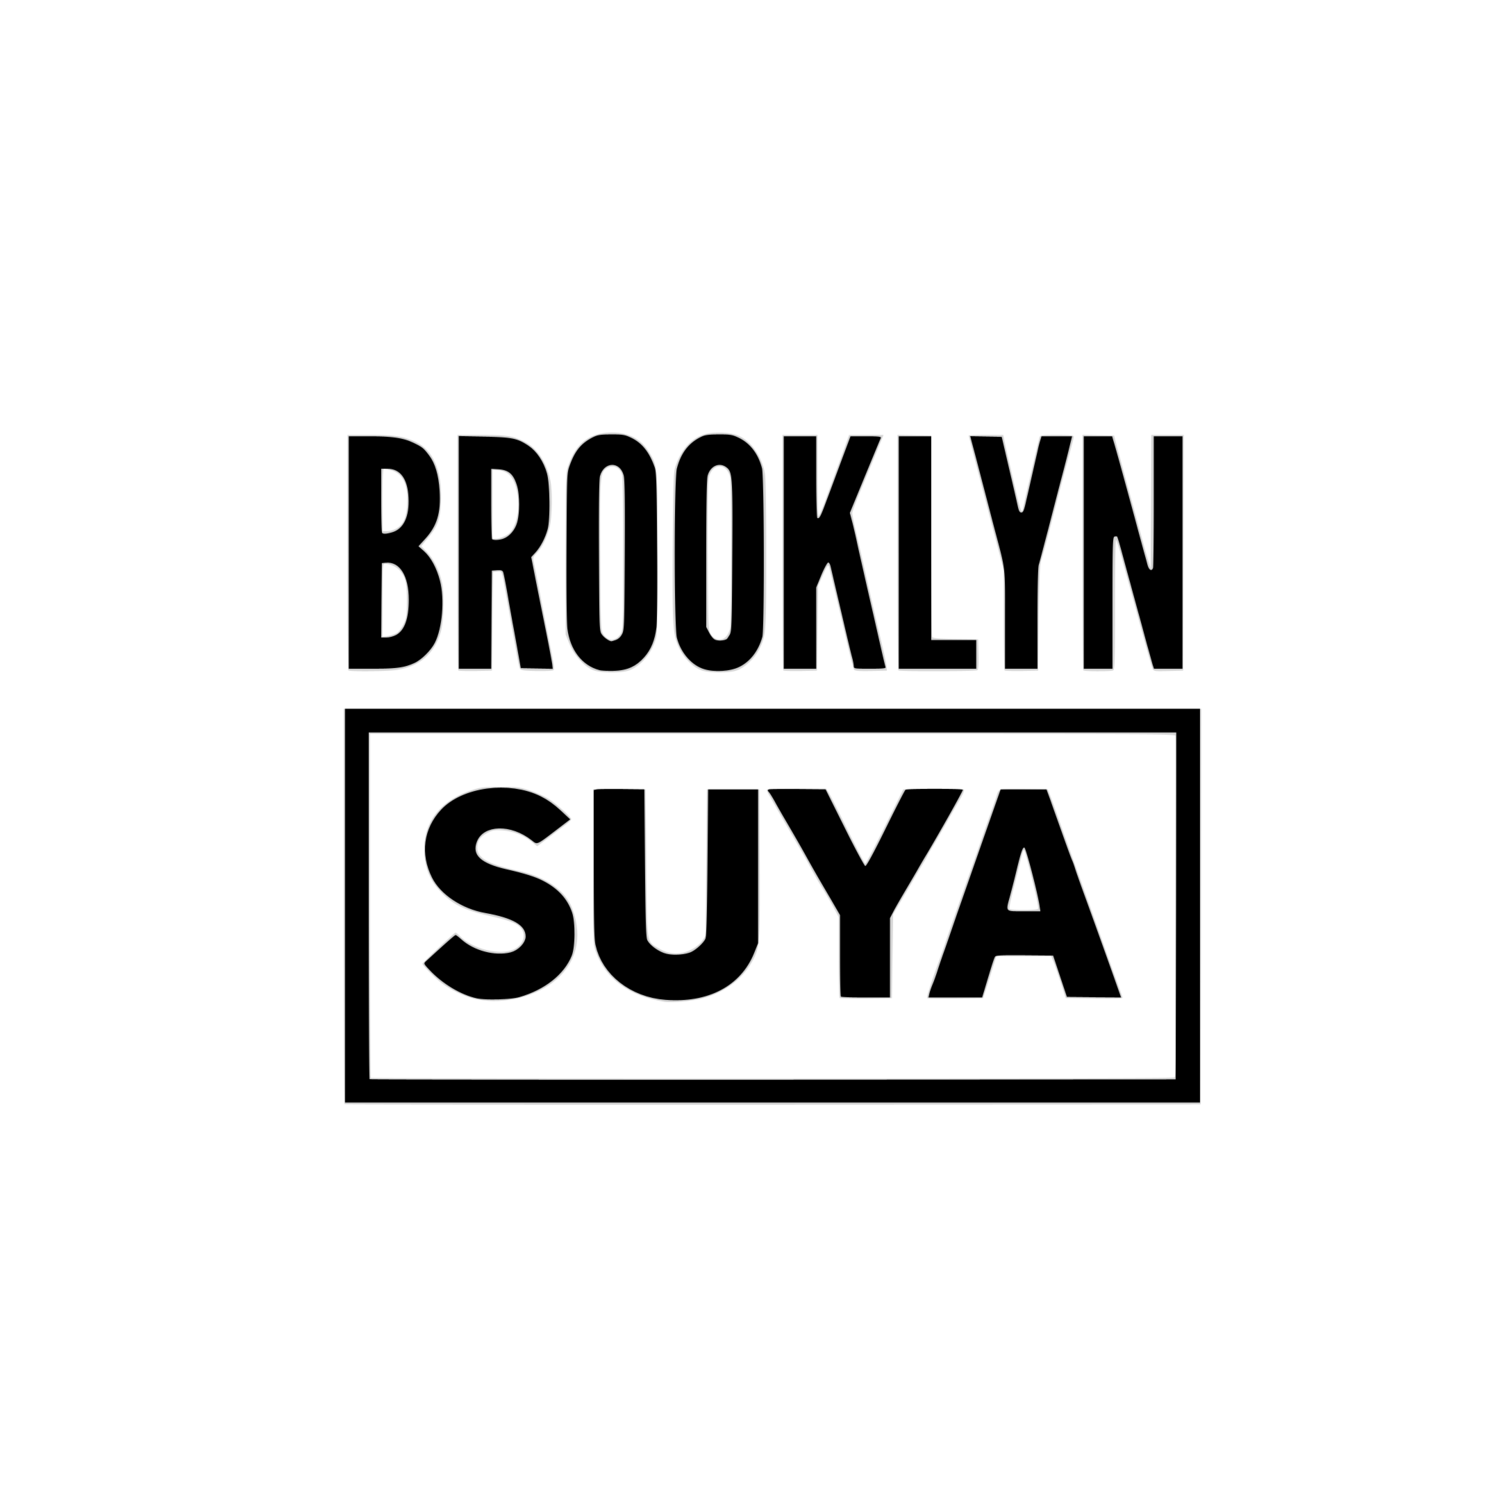 Brooklyn Suya